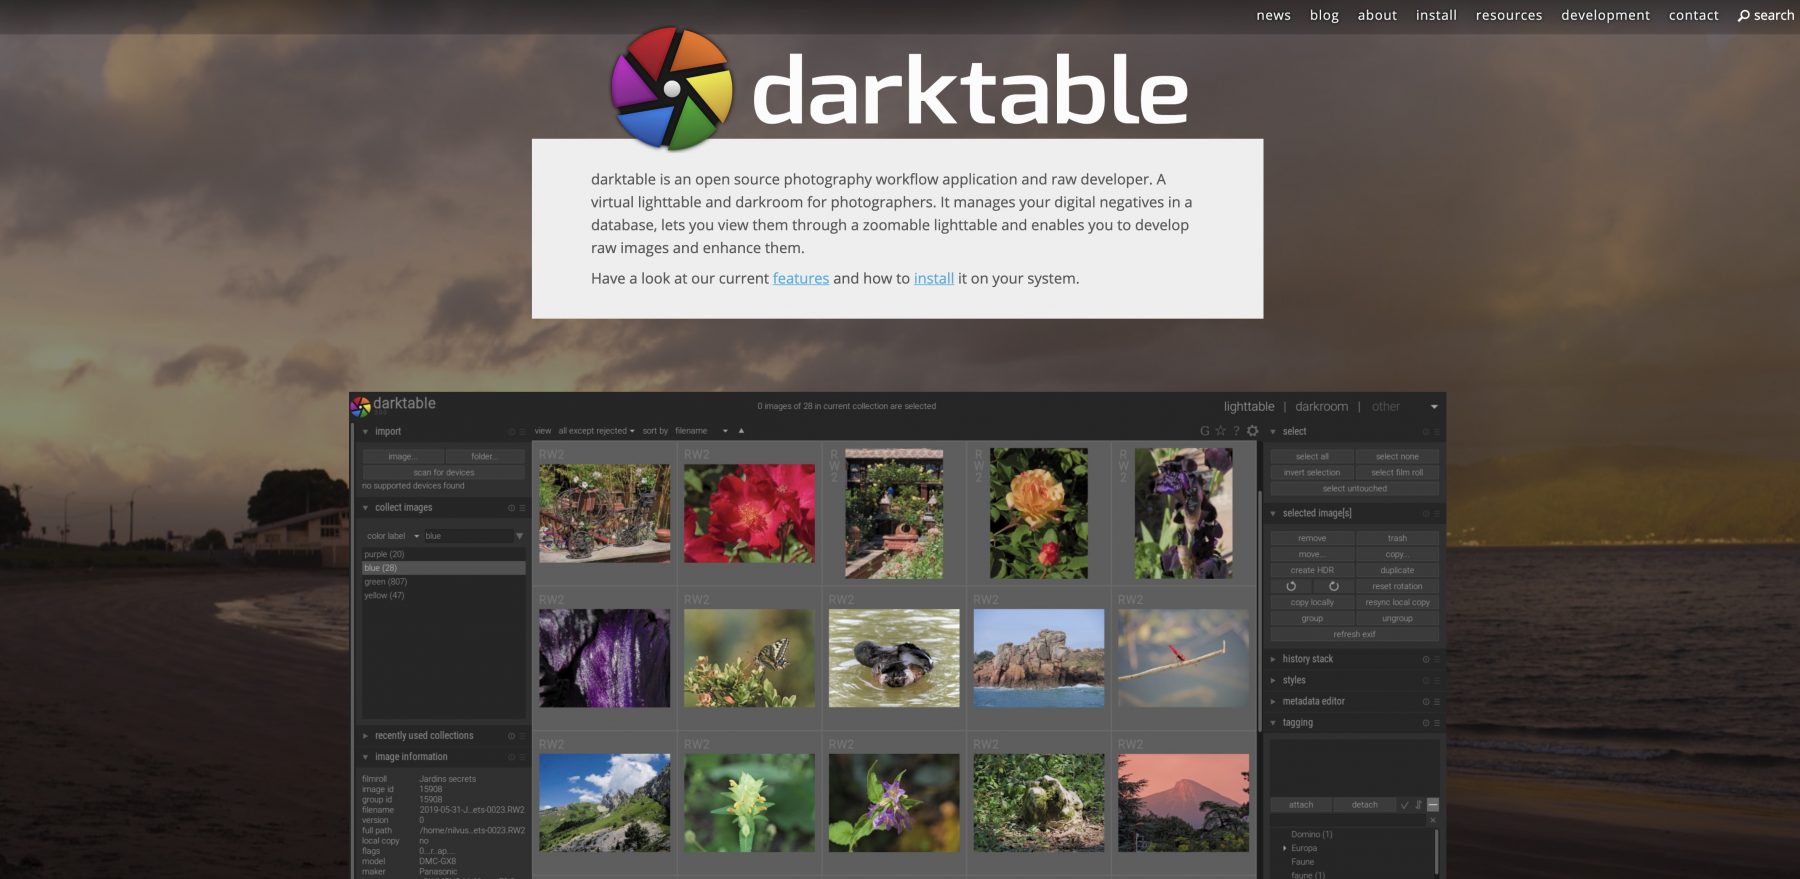 darktable presets download